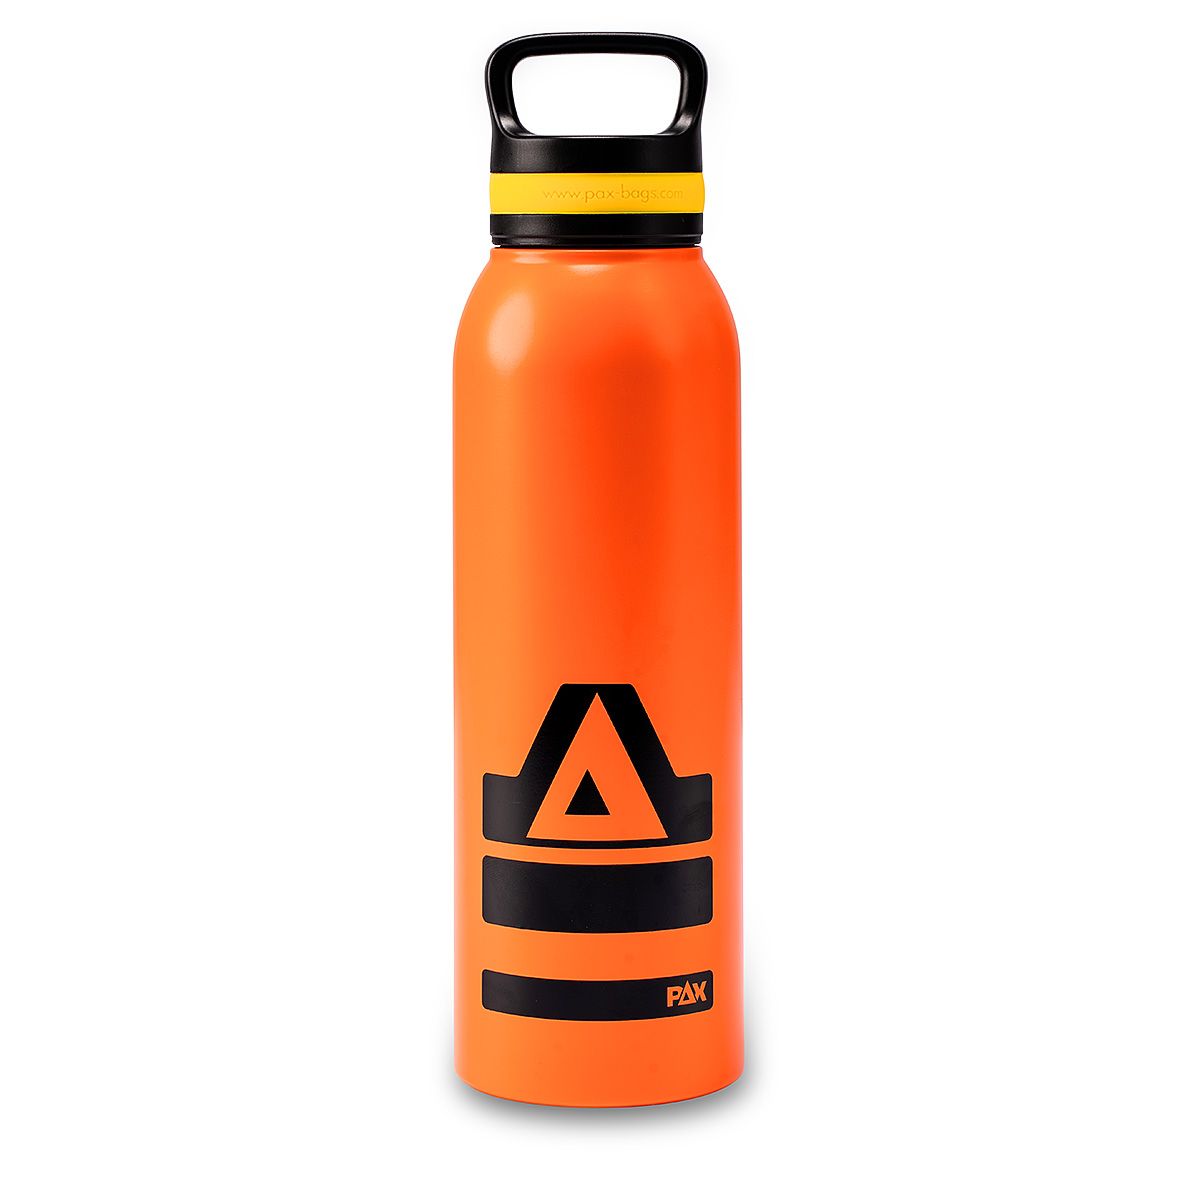 PAX Trinkflasche in orange